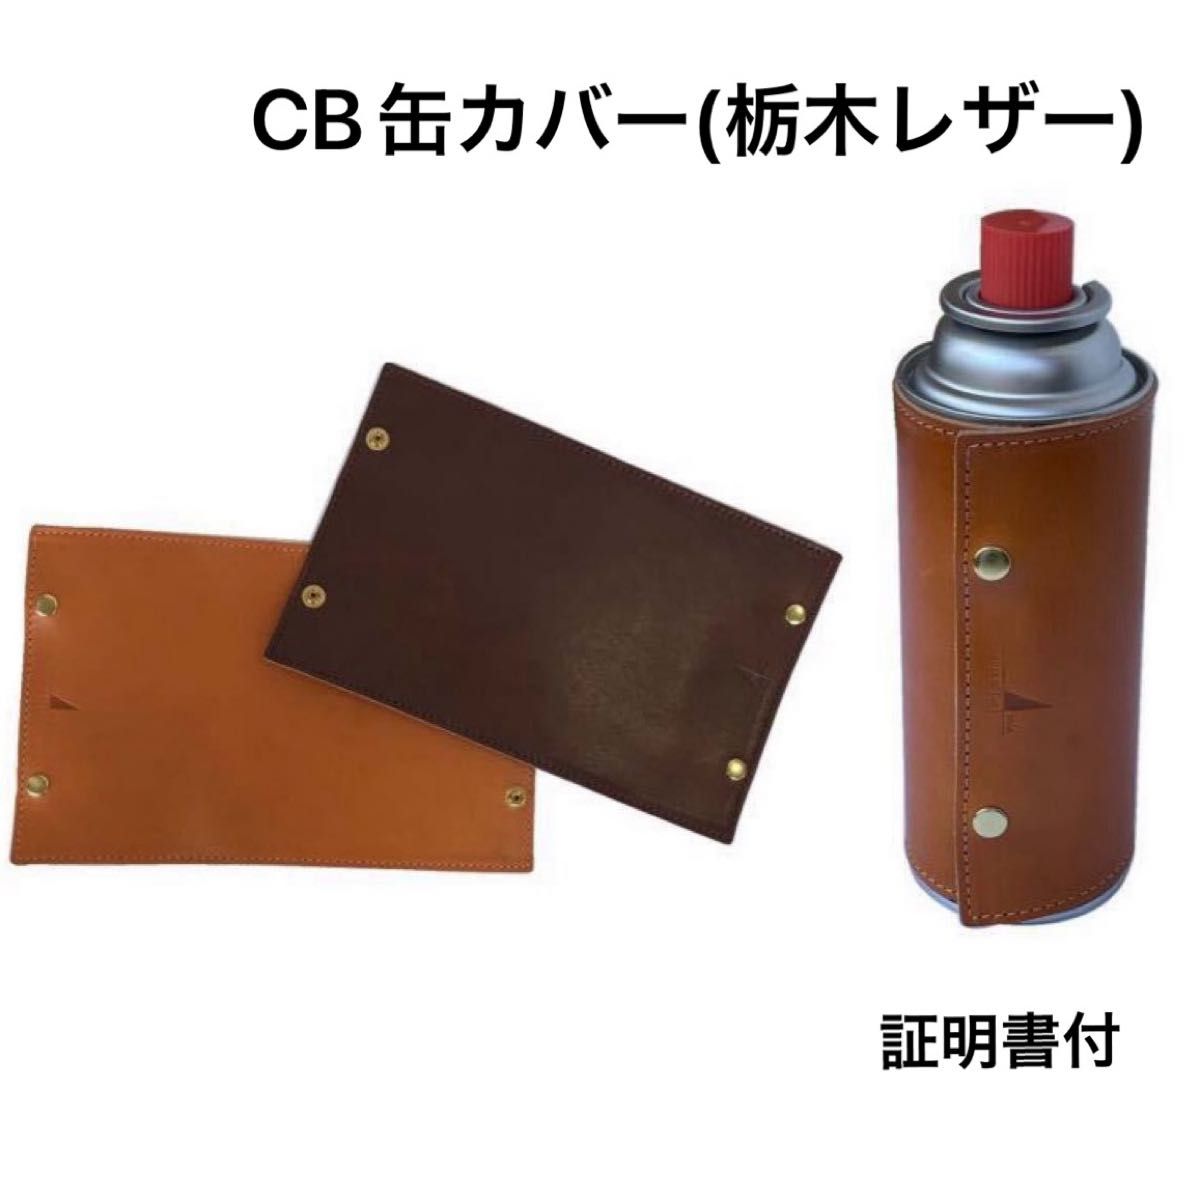 CB缶カバー(栃木レザー)  カセットガス用レザーカバー